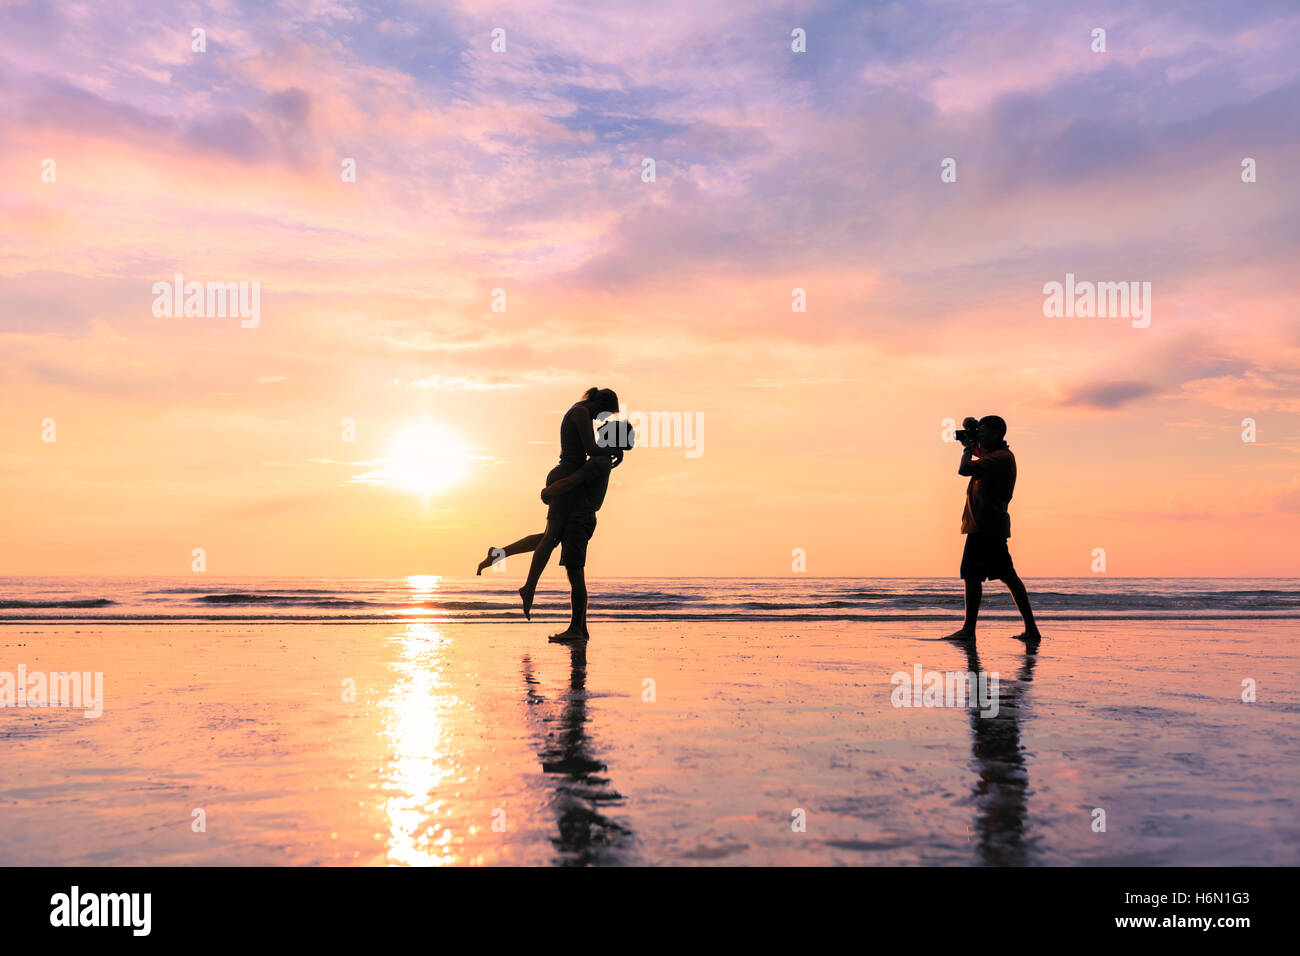 Fotógrafo tomando la foto de una pareja besándose en la playa durante la puesta de sol - concepto sobre viajes y luna de miel romántica Foto de stock